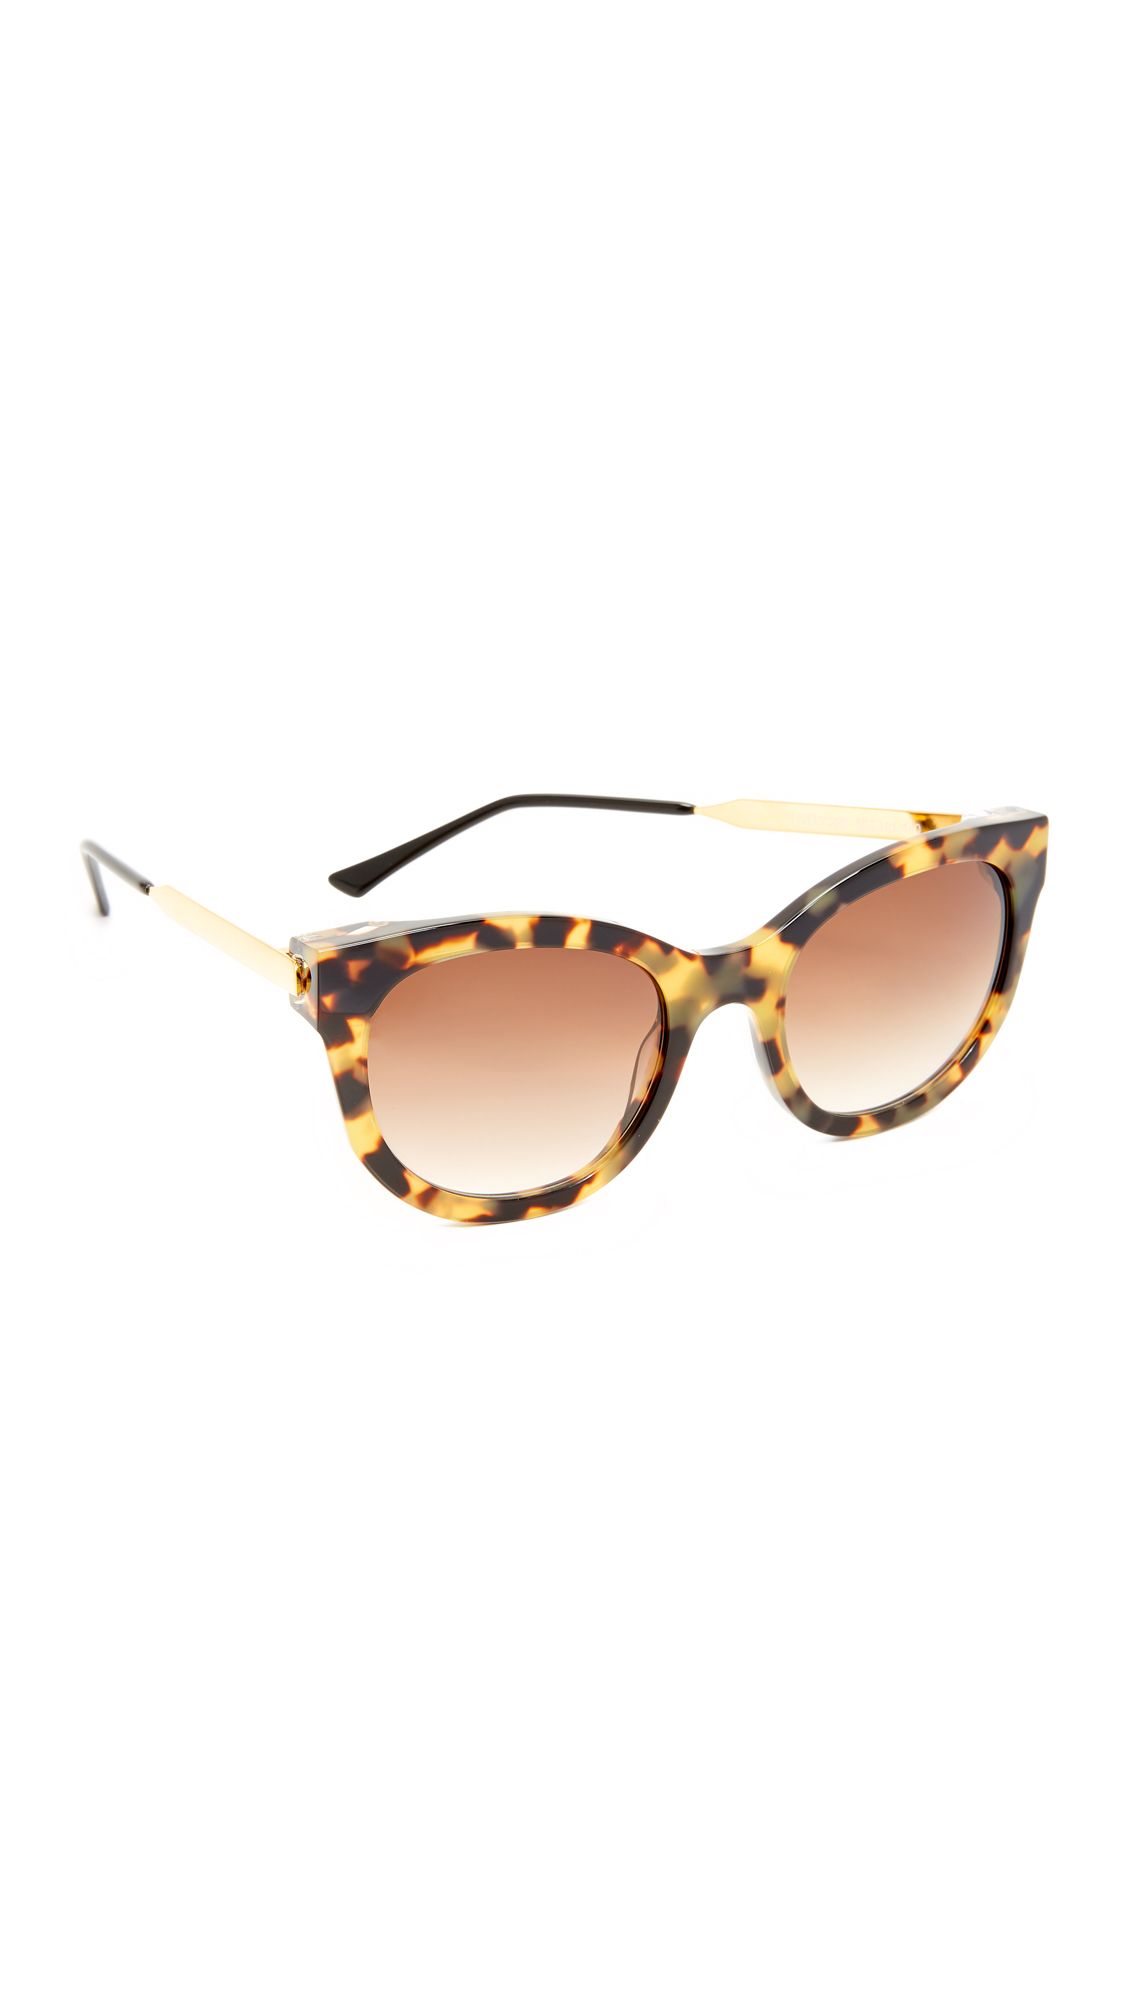 Lively Sunglasses | Shopbop